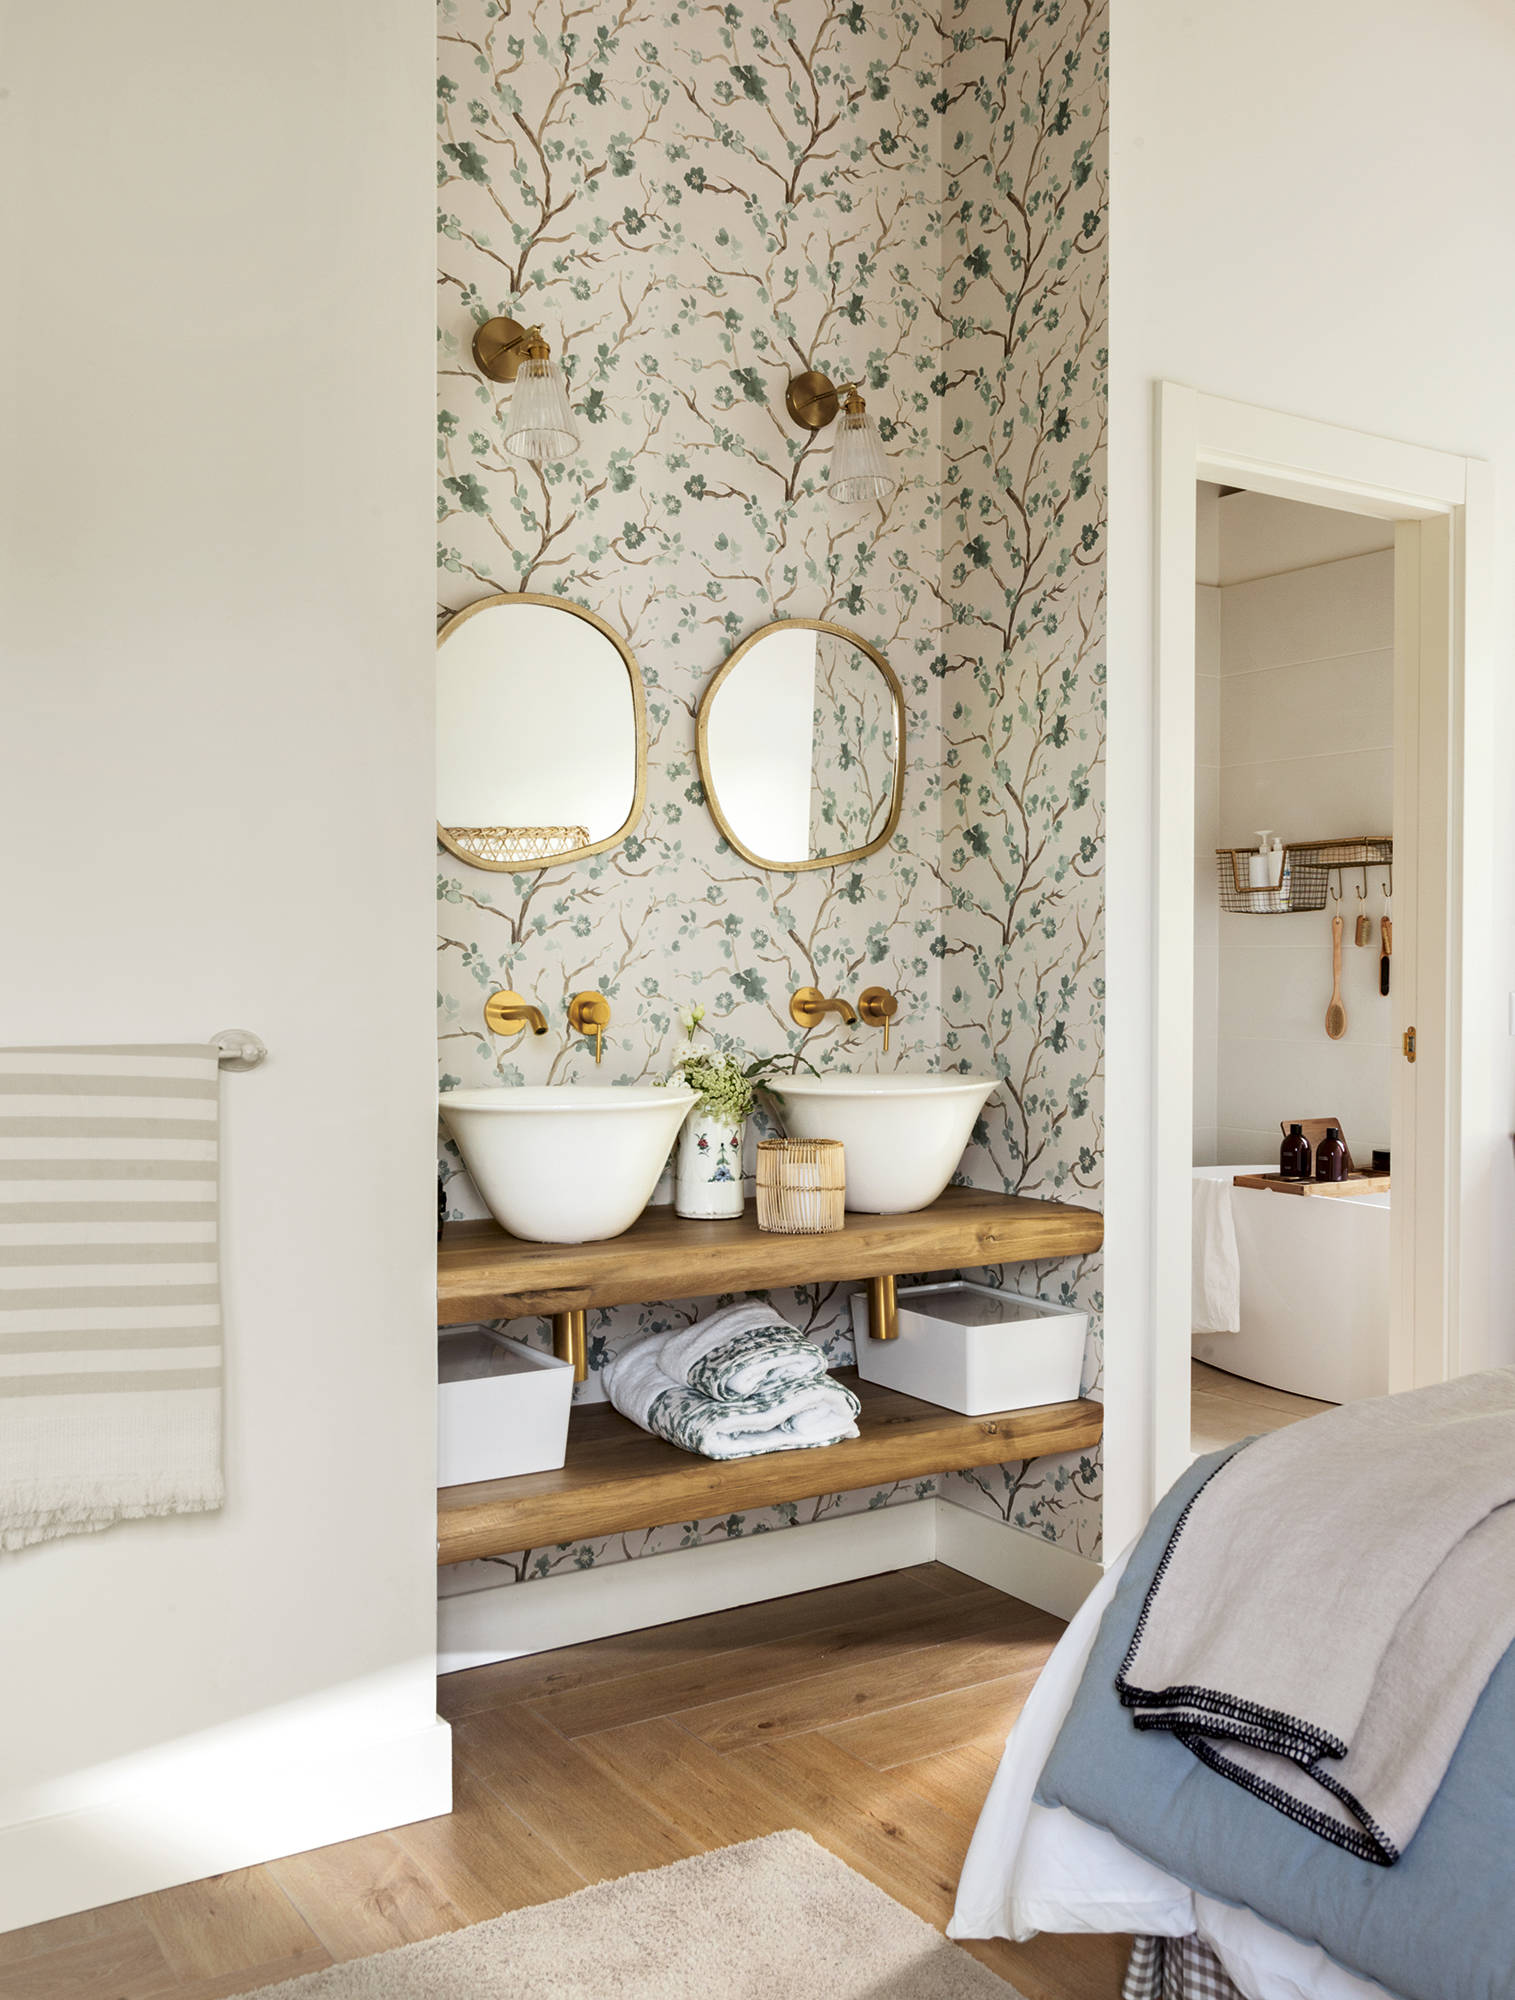 Dormitorio con baño en la habitación con dos lavamanos, dos espejos, baldas de madera abiertas y papel pintado. 